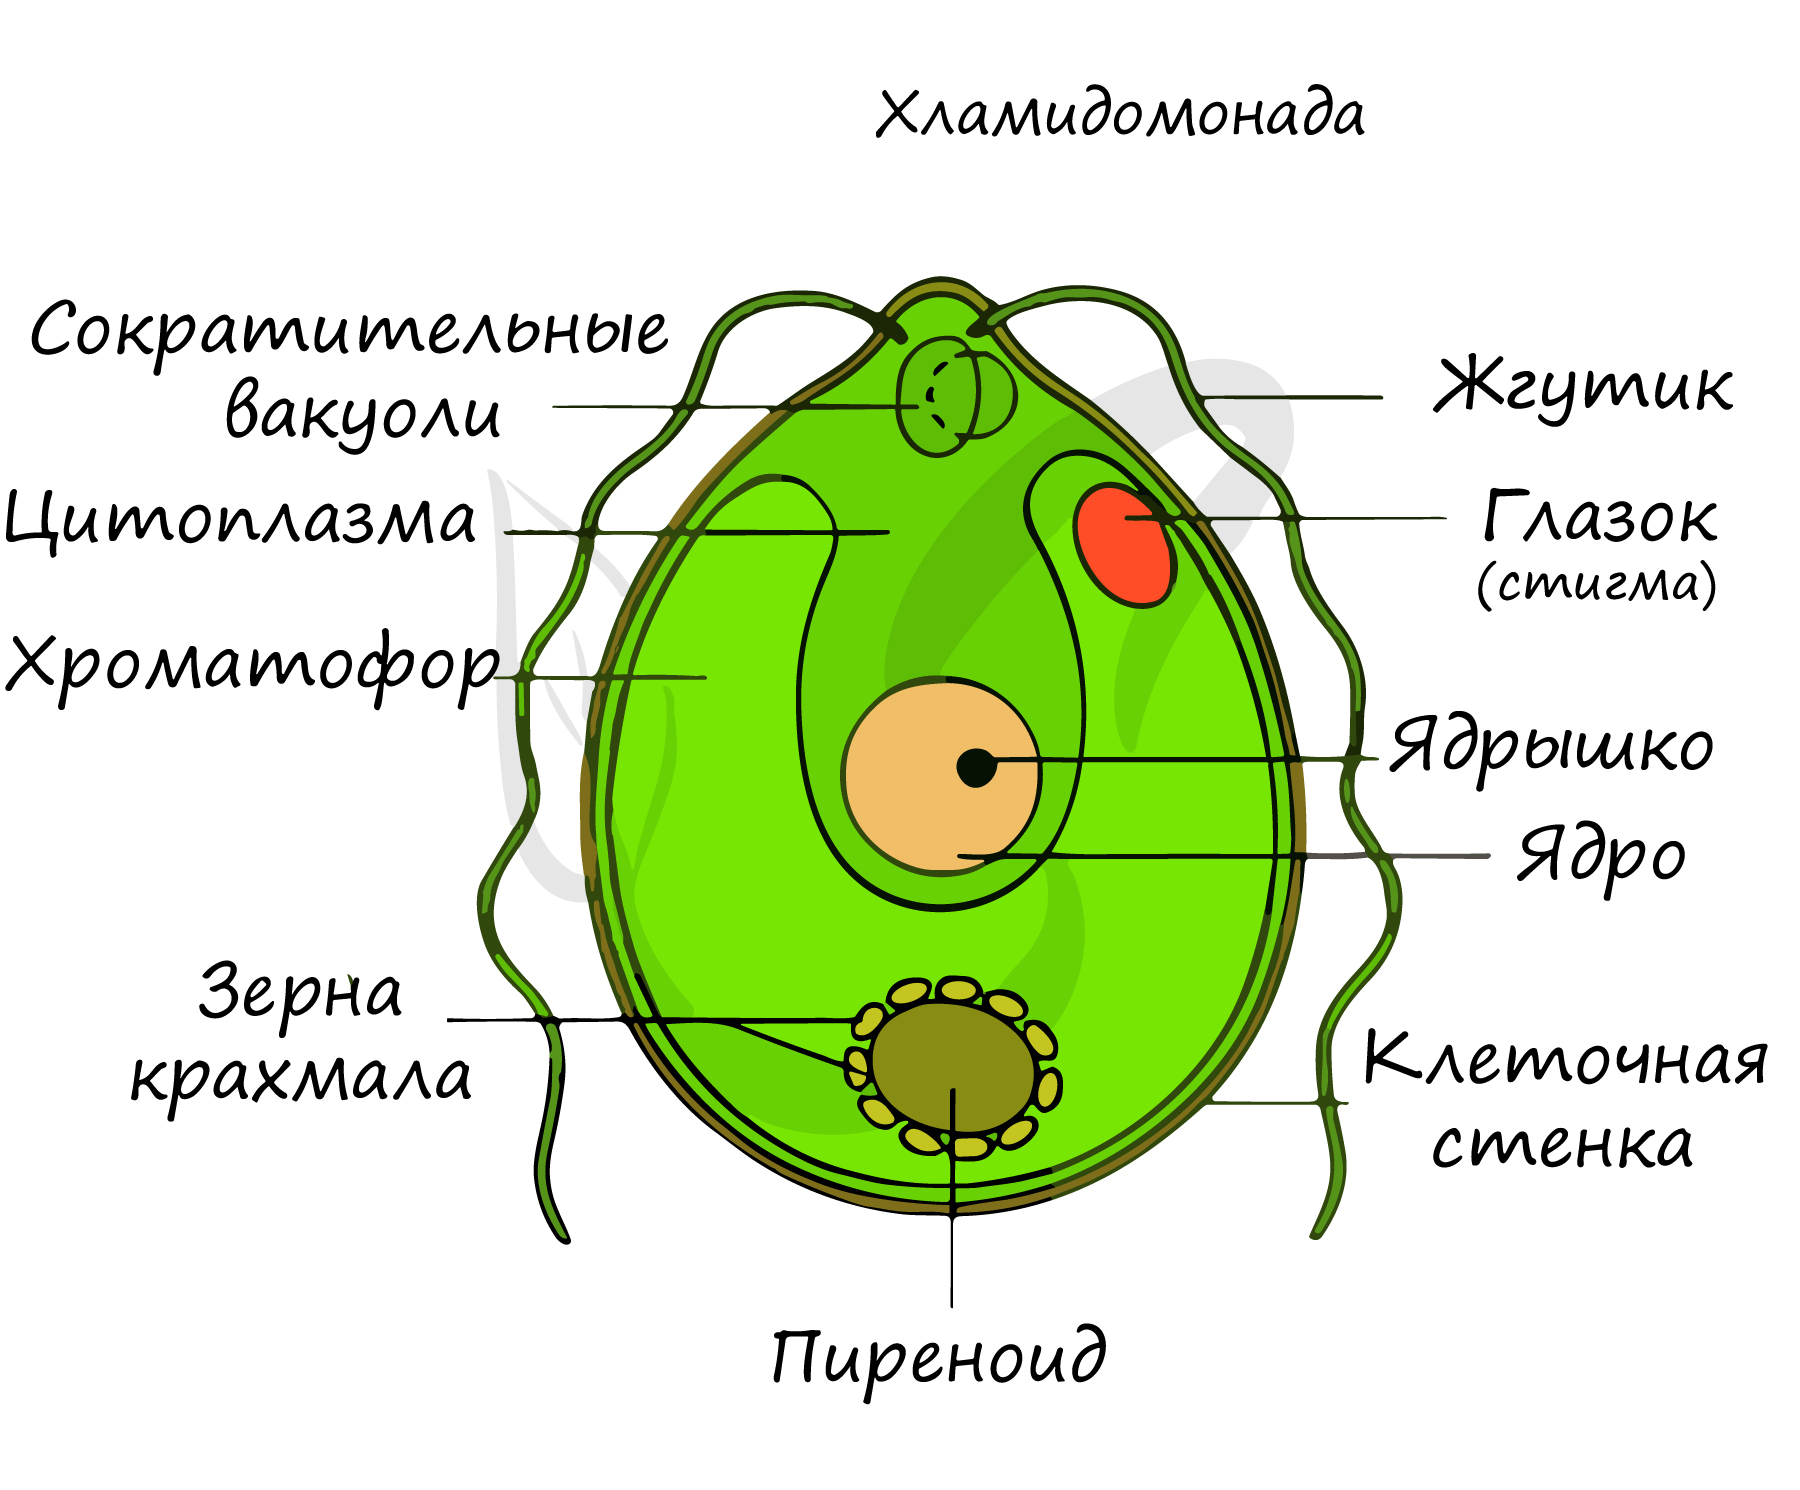 Клетки имеющие два ядра. Хламидомонада и хлорелла. Одноклеточная водоросль хламидомонада. Строение клетки Chlamydomonas. Строение одноклеточных зеленых водорослей.